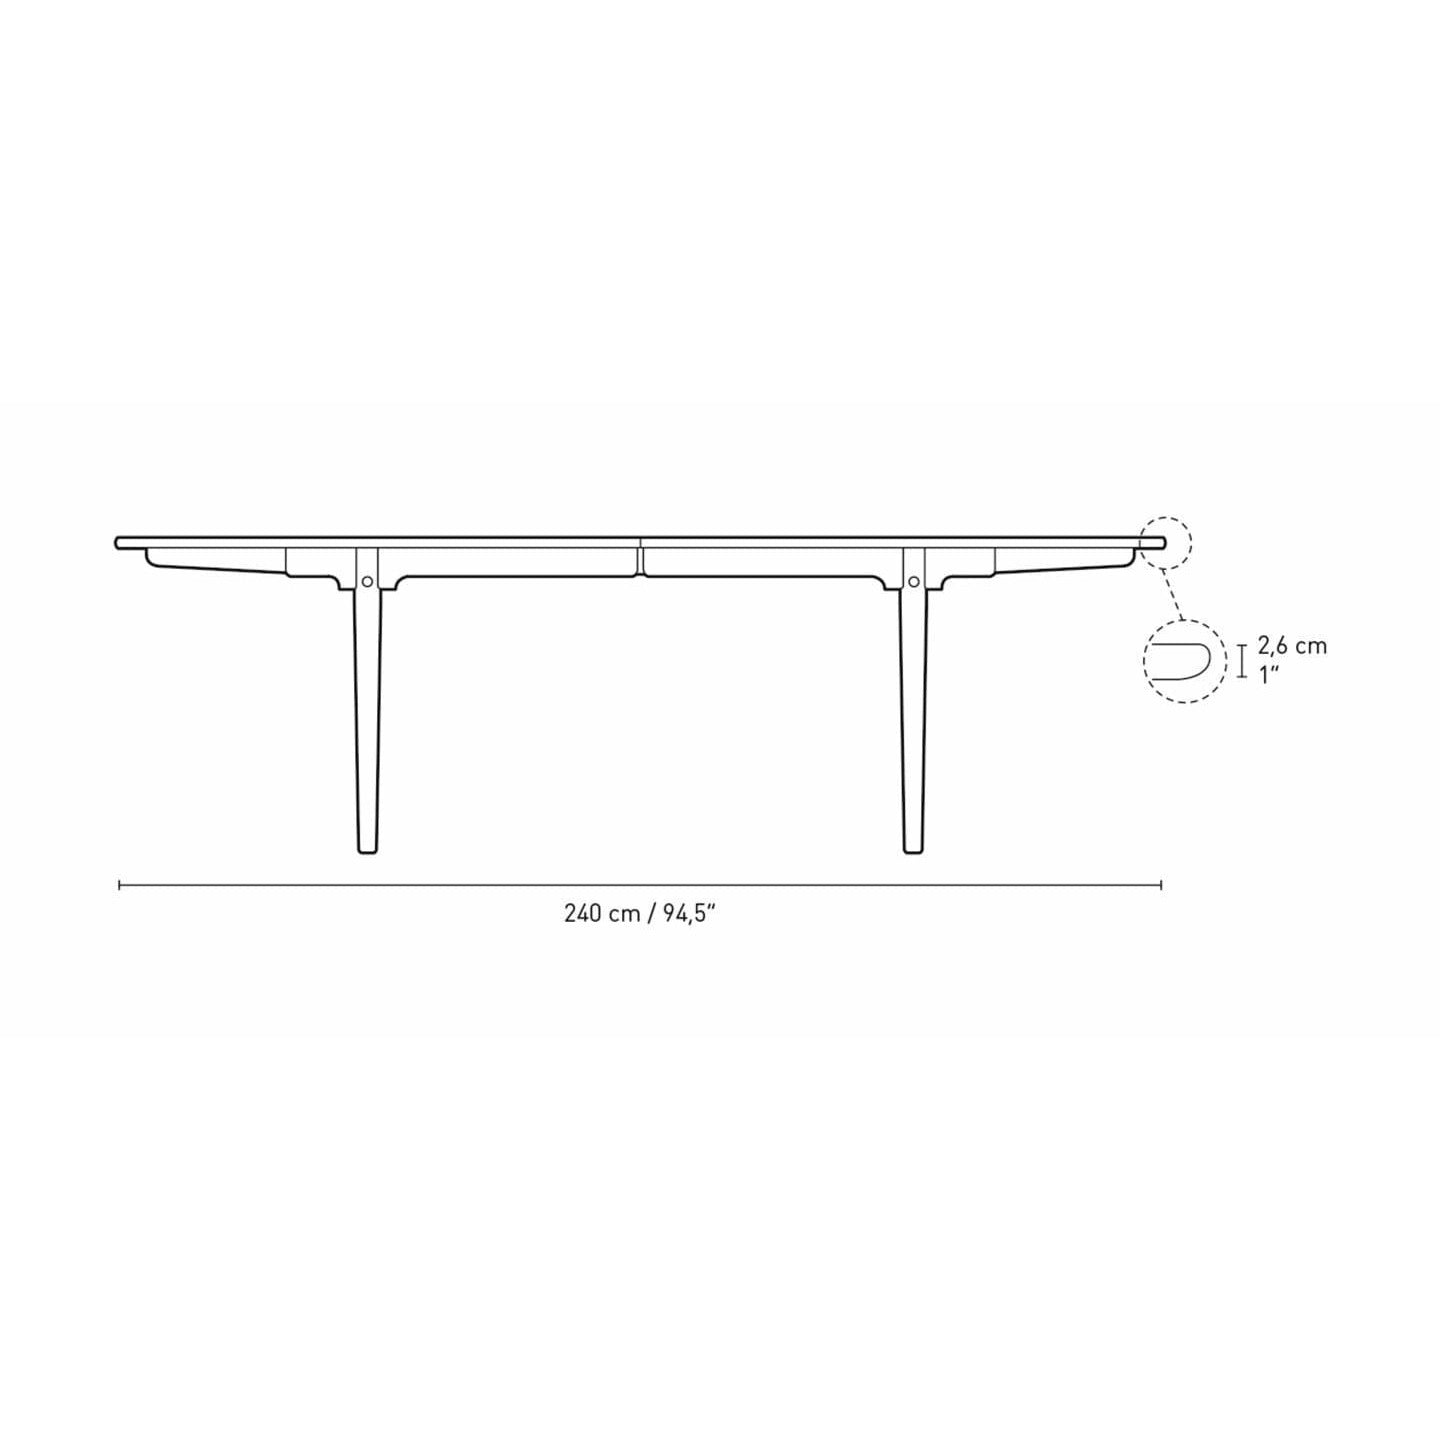 Carl Hansen CH339 matbord designad för 4 drag ut plattor, tvålad ek